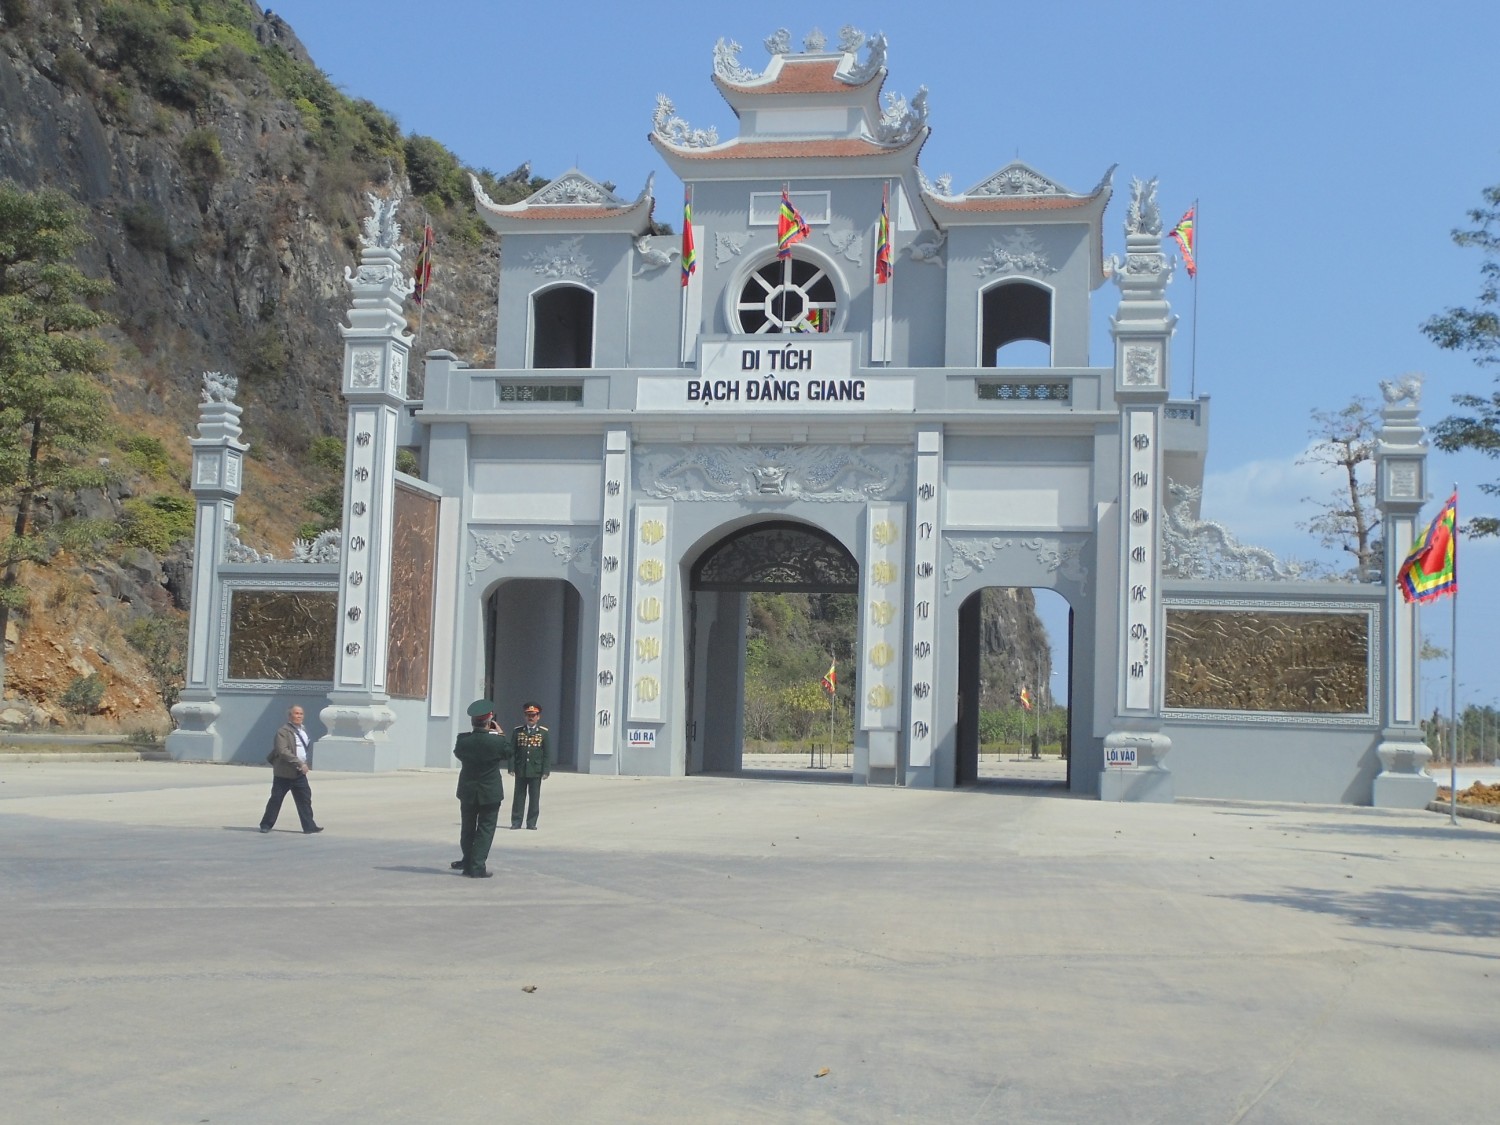 Cổng khu Di tích Bạch Đằng Giang - Tràng Kênh, Hải Phòng